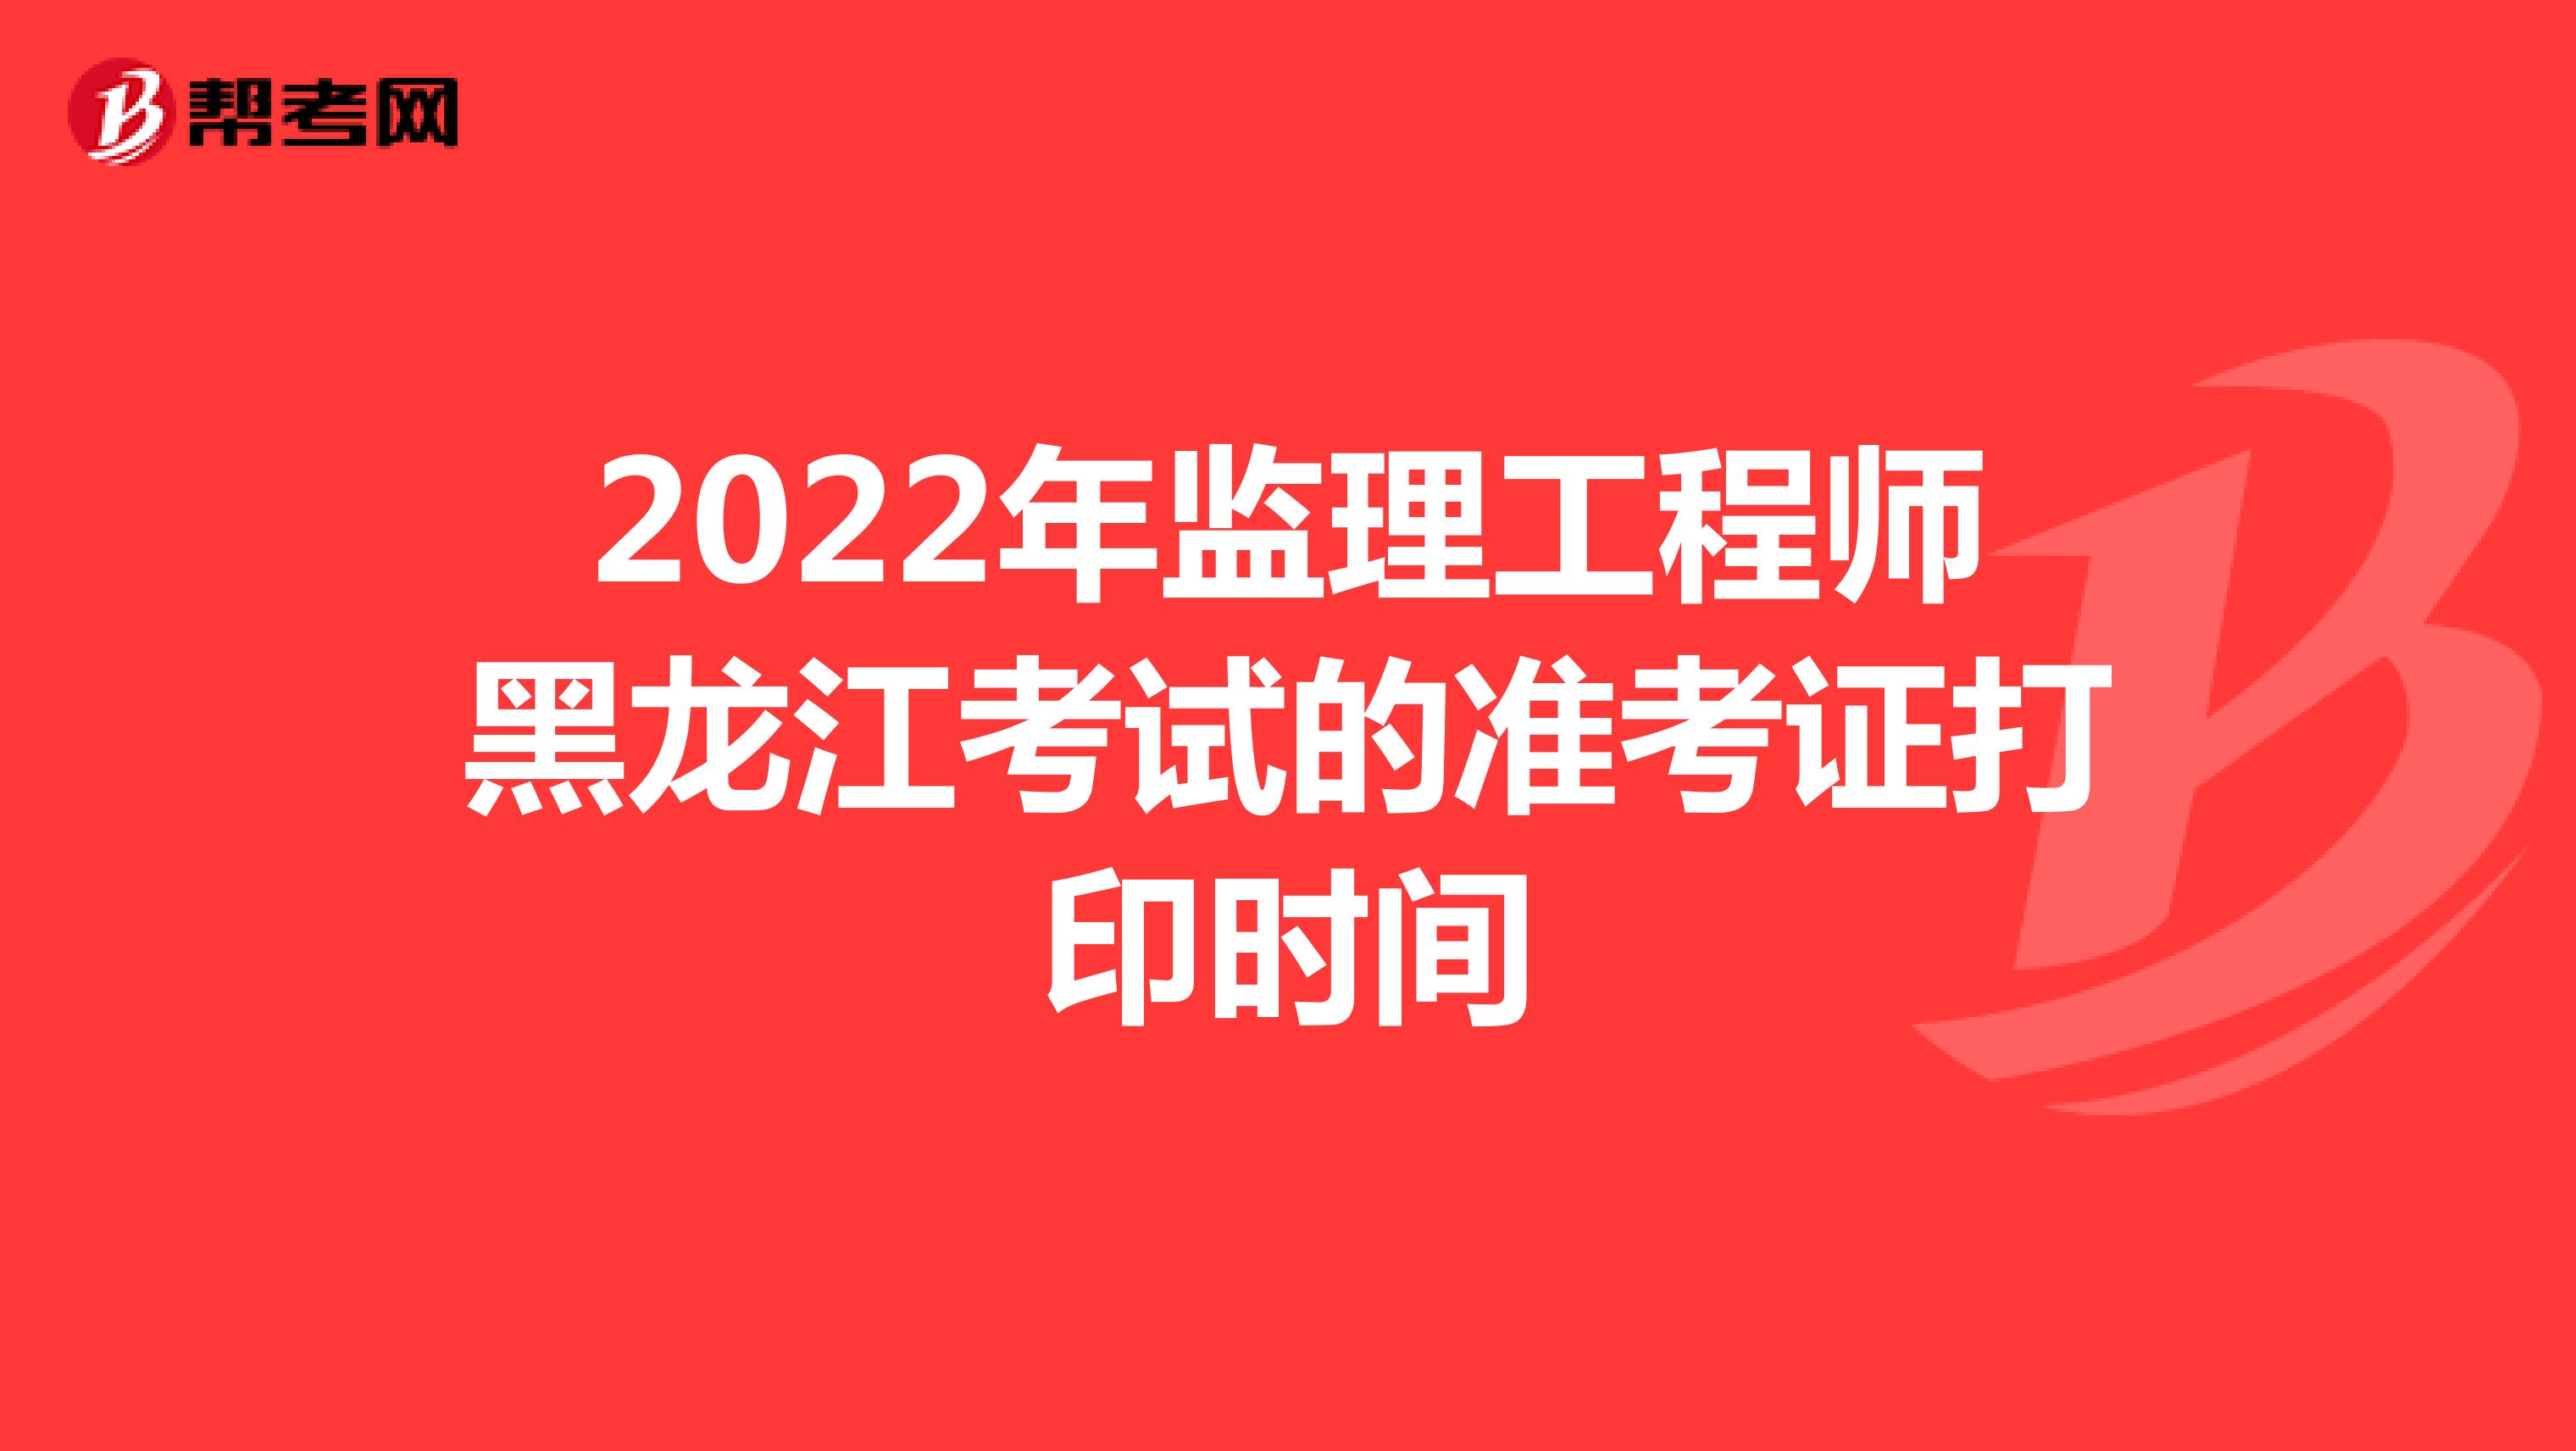 2022年监理工程师黑龙江考试的准考证打印时间